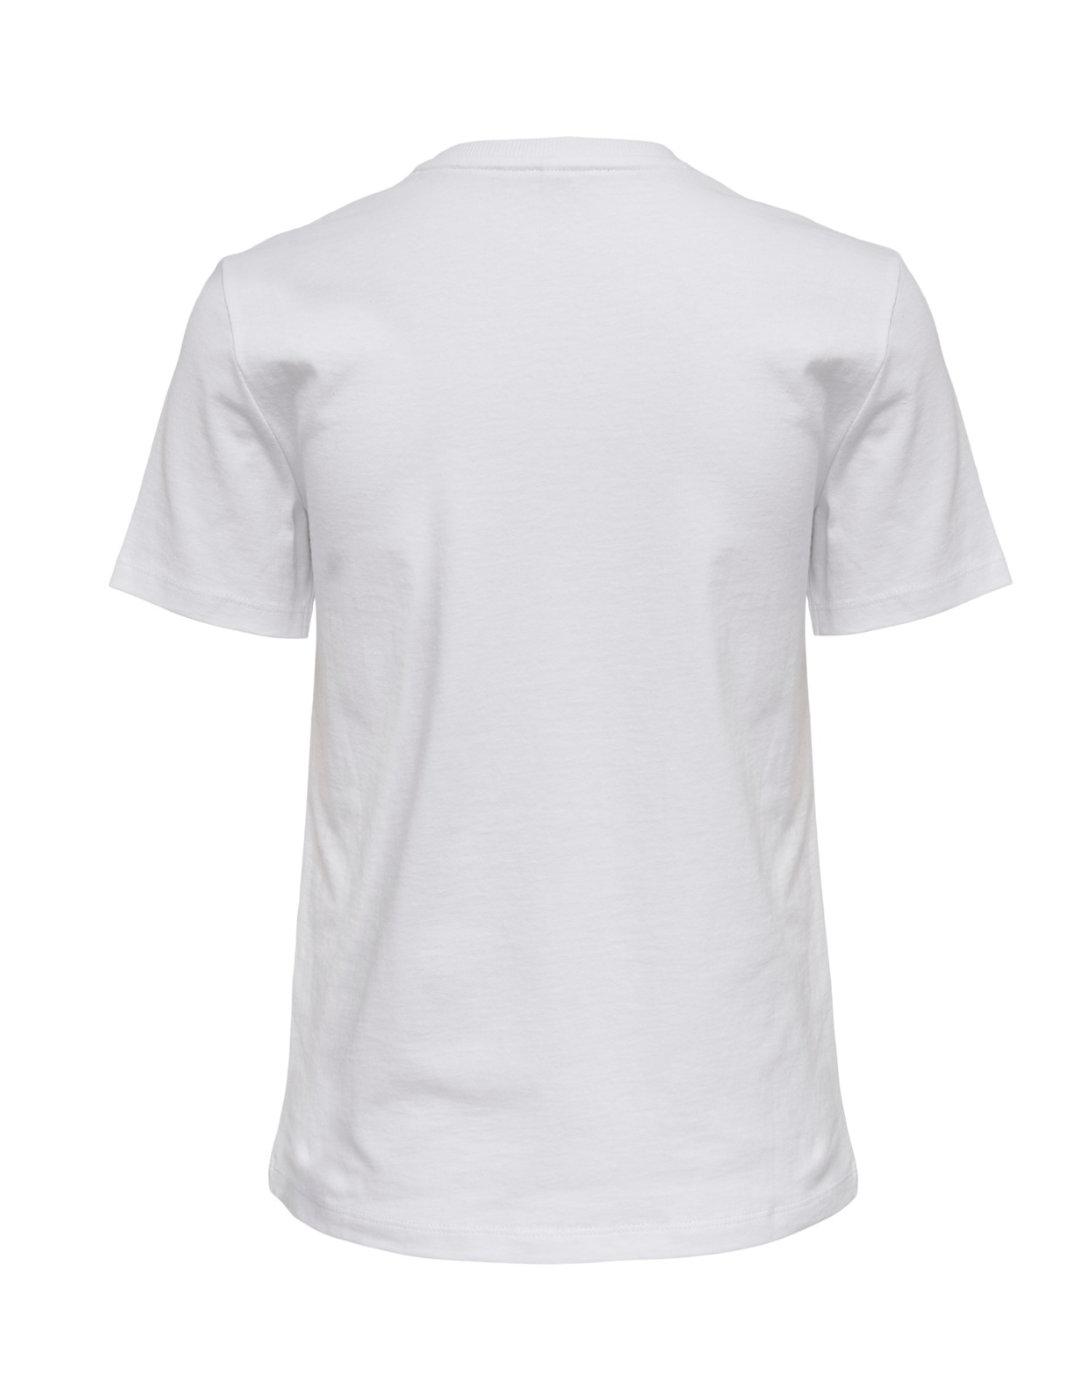 Camiseta Only Diane blanco para mujer -b